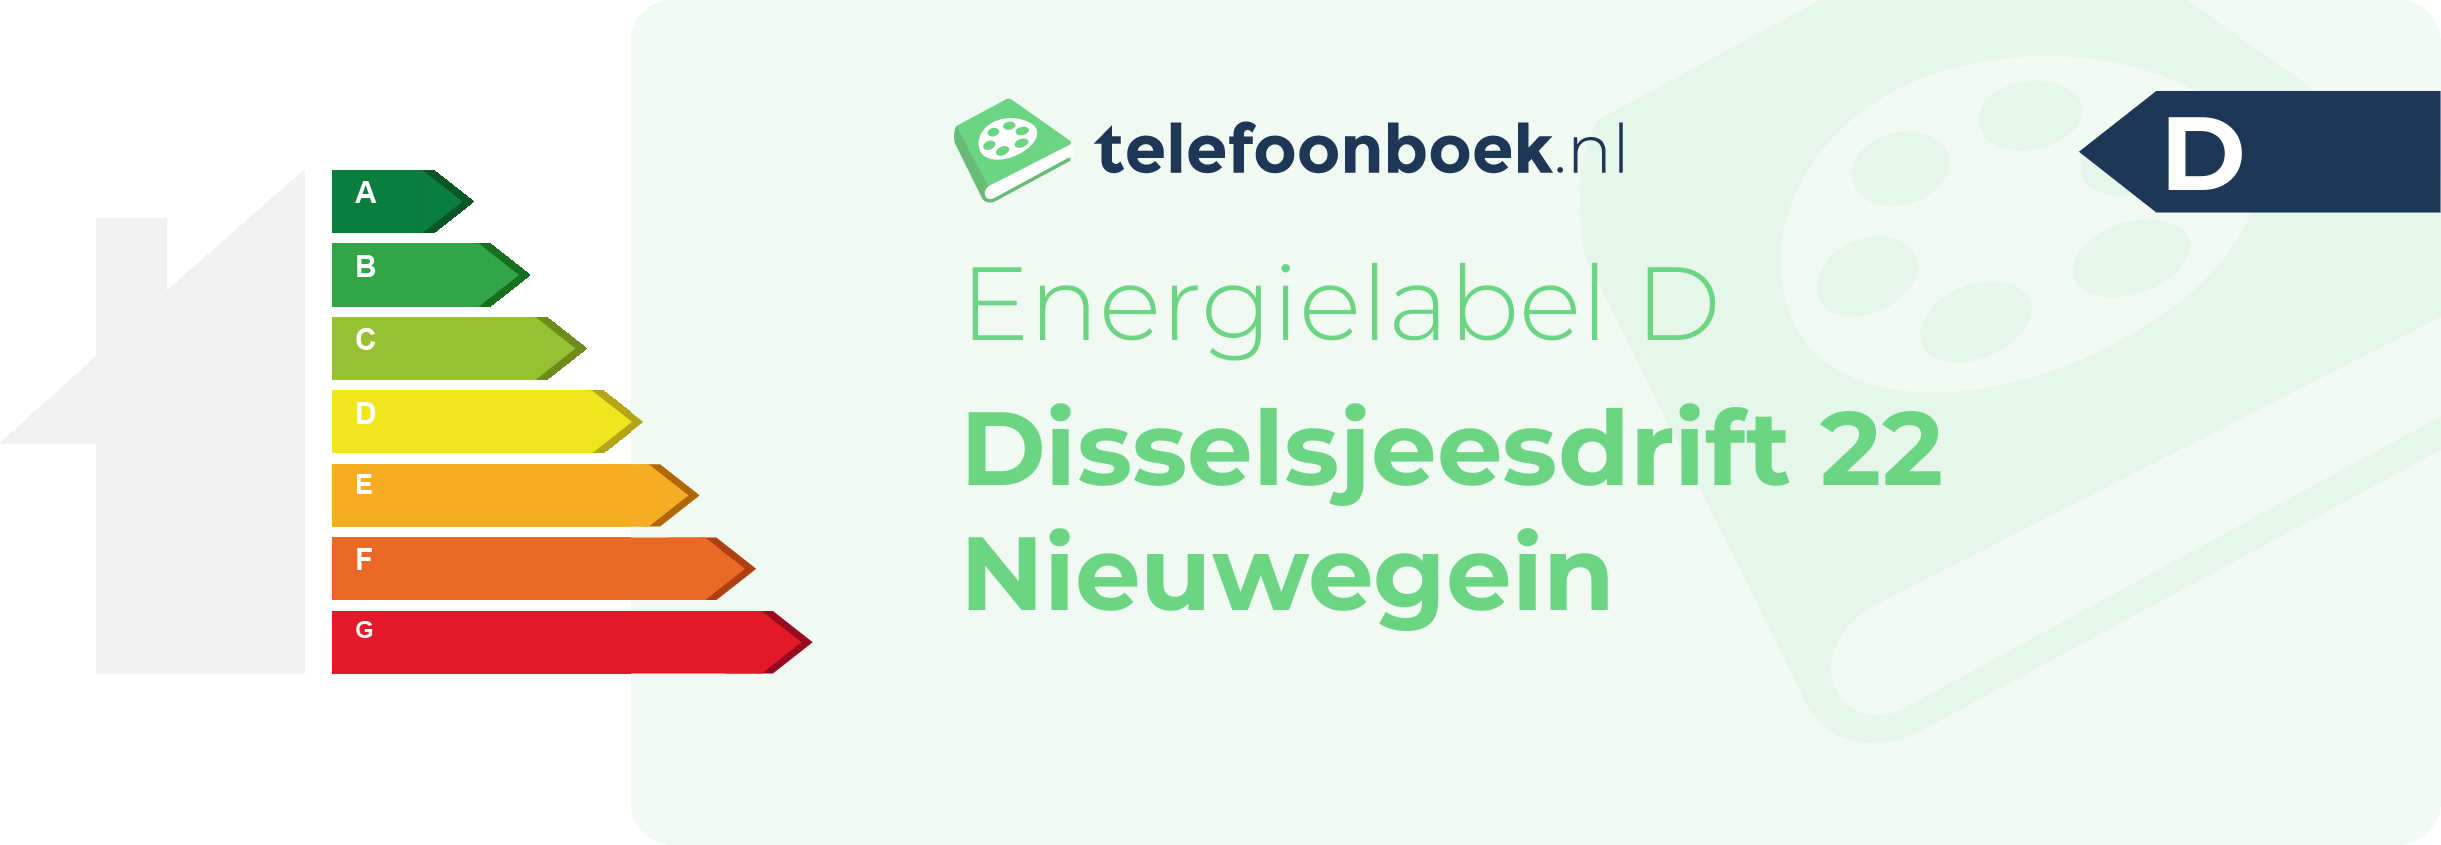 Energielabel Disselsjeesdrift 22 Nieuwegein